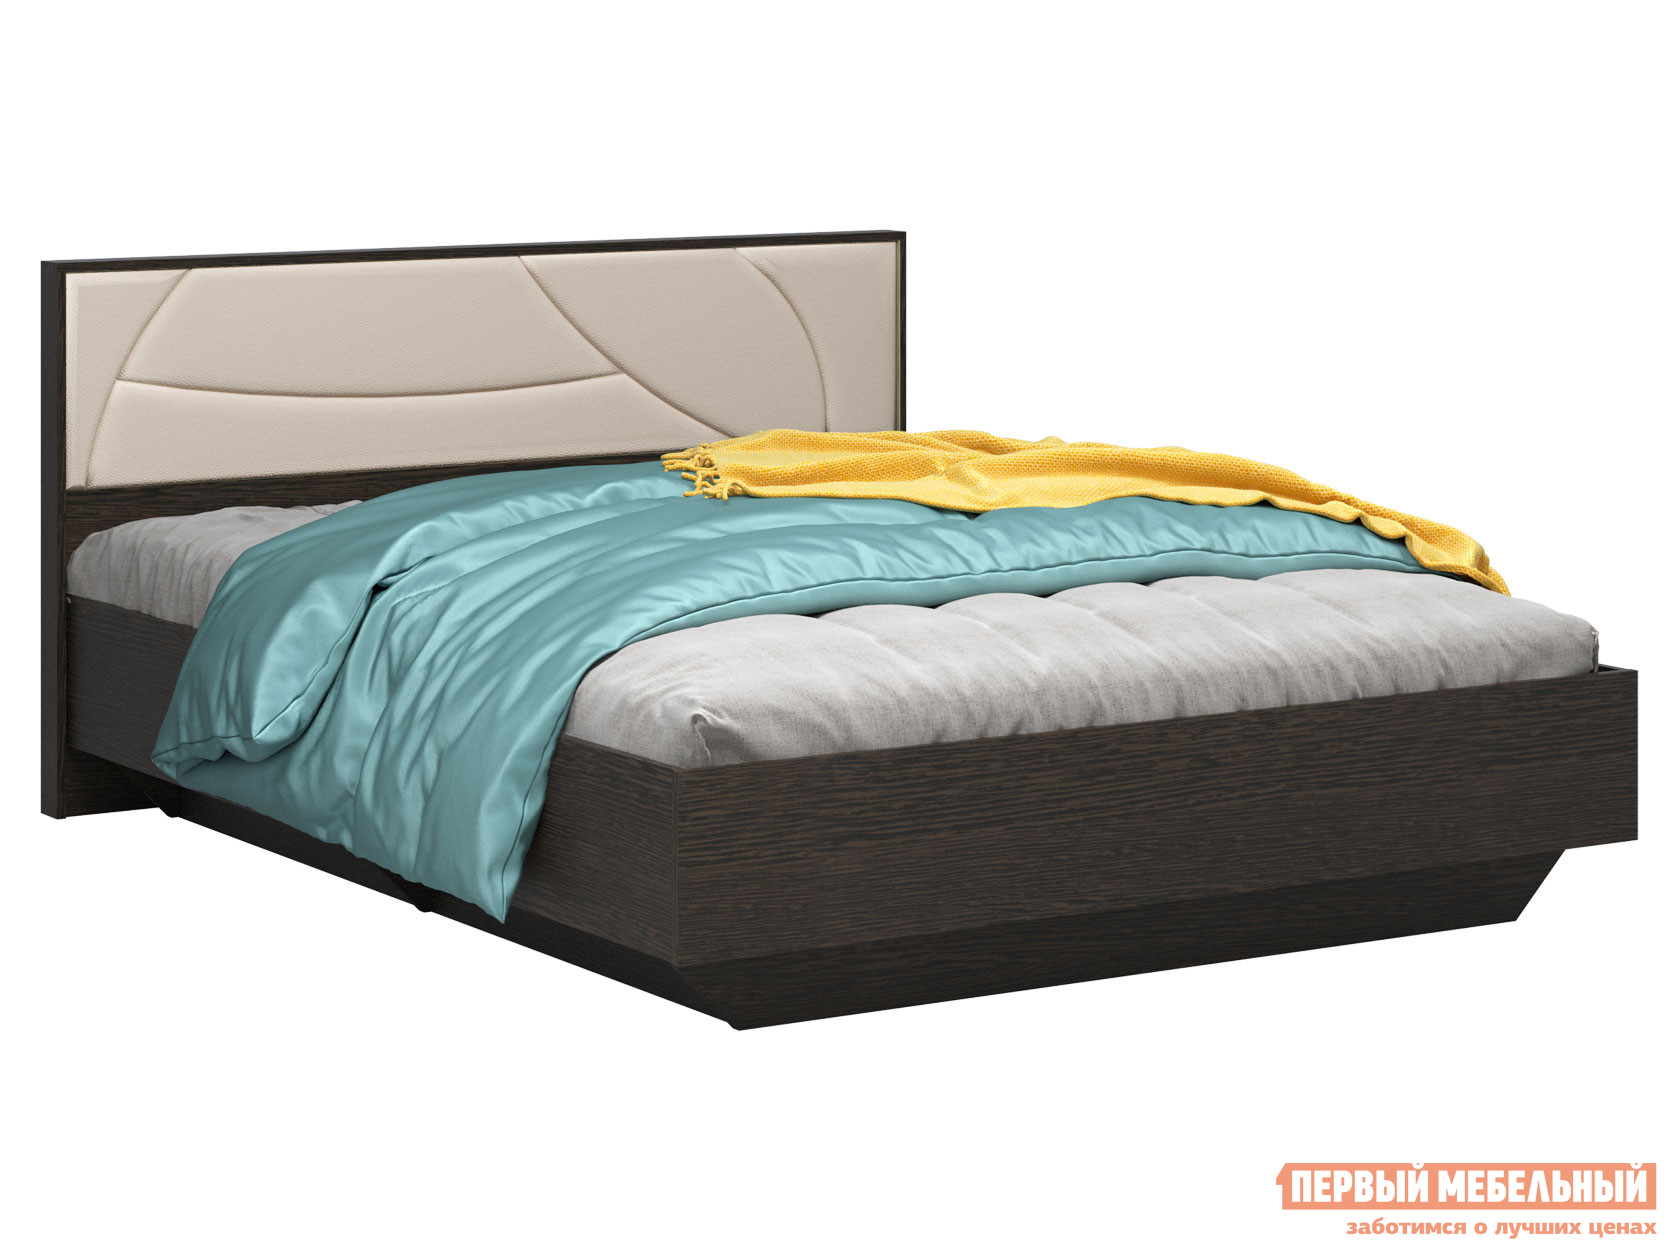 Двуспальная кровать  Мирти Люкс Венге / Ваниль, экокожа, 140х200 см, С анатомическим основанием